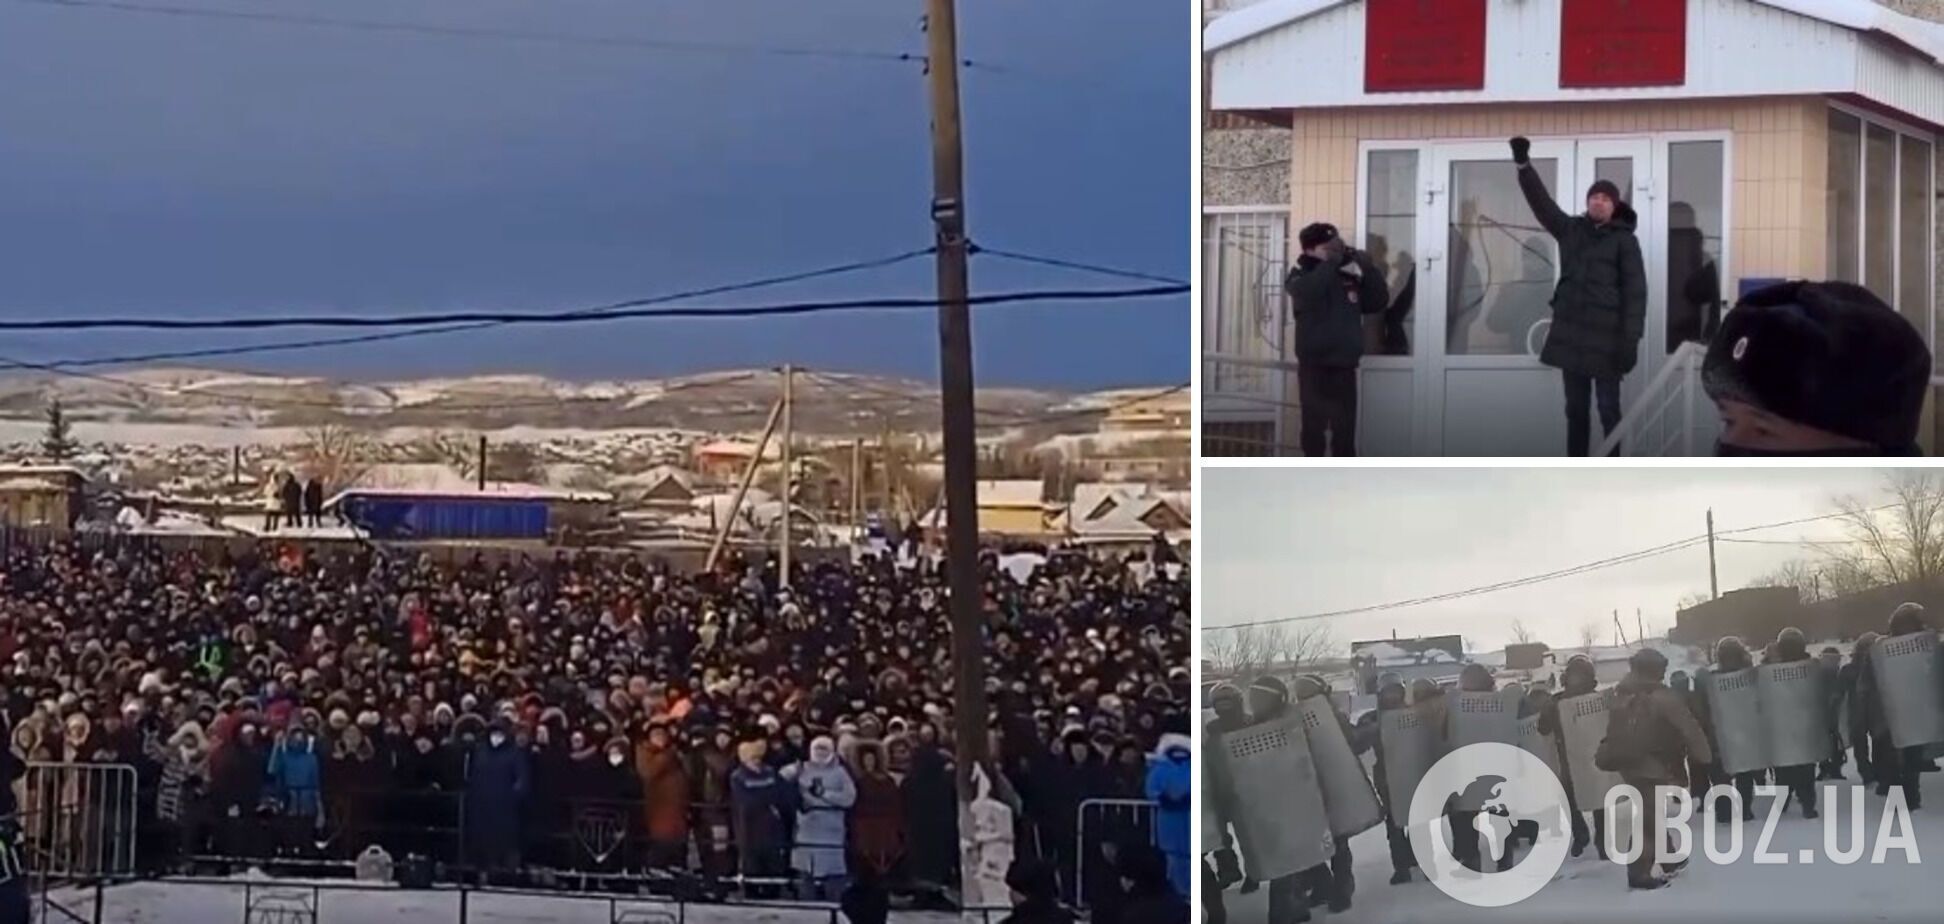 Влада відключила інтернет і перекрила дороги: протести у Башкирії набирають обертів, тисячі людей вийшли на акцію. Відео 